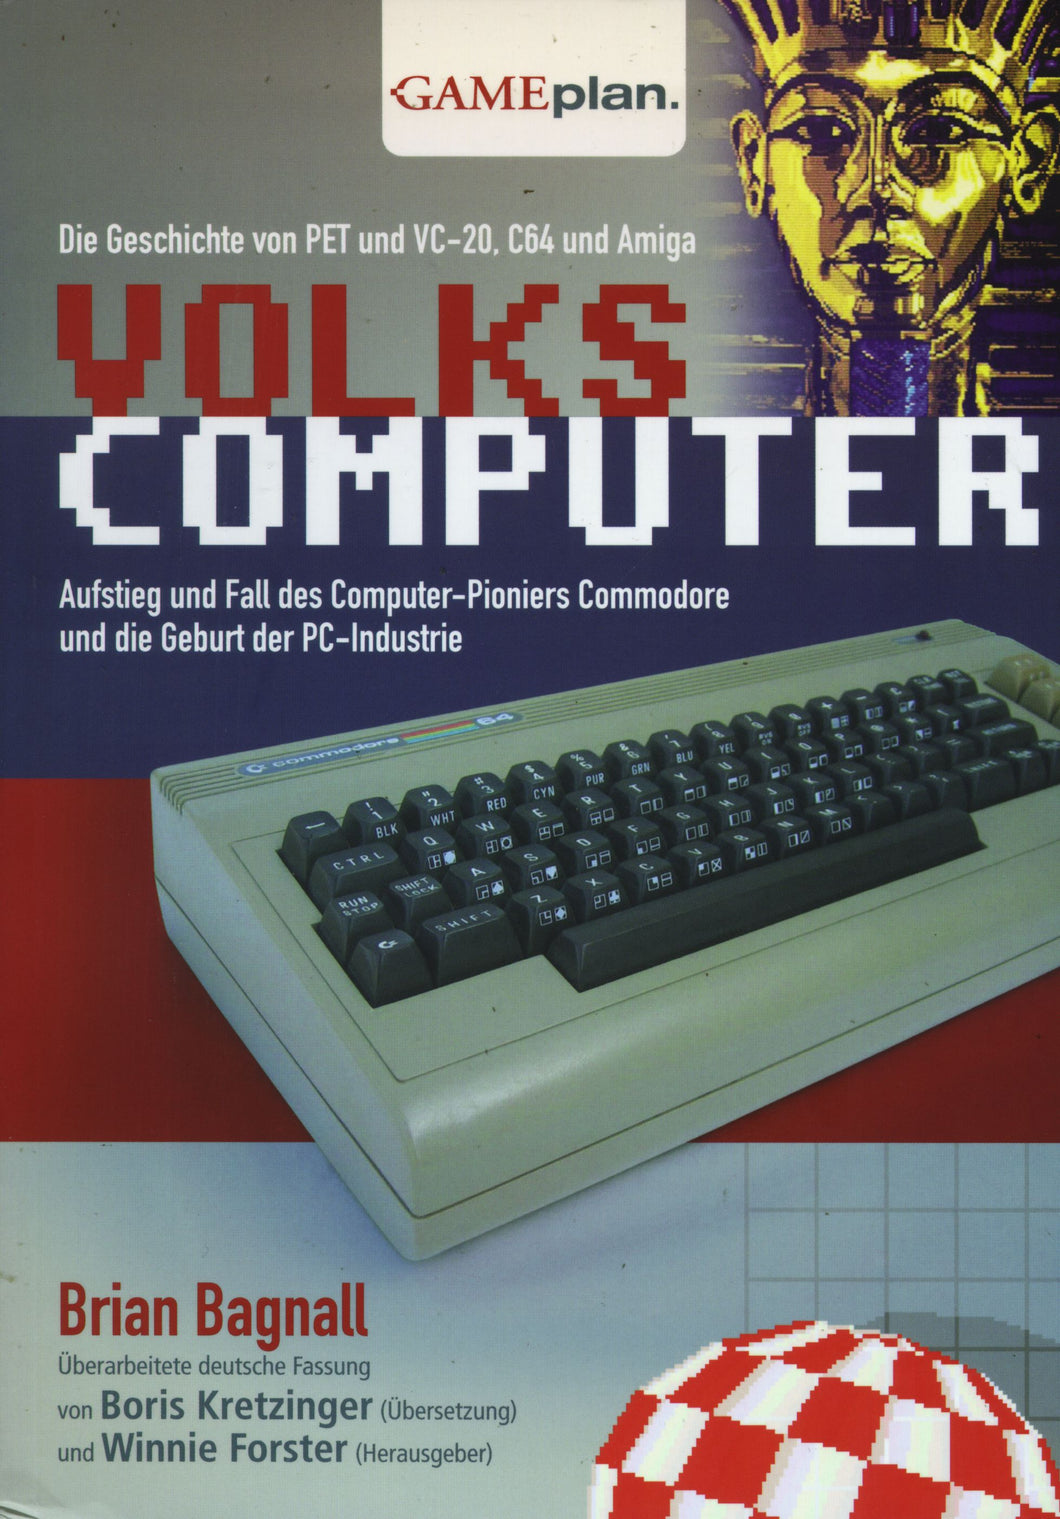 Volks Computer